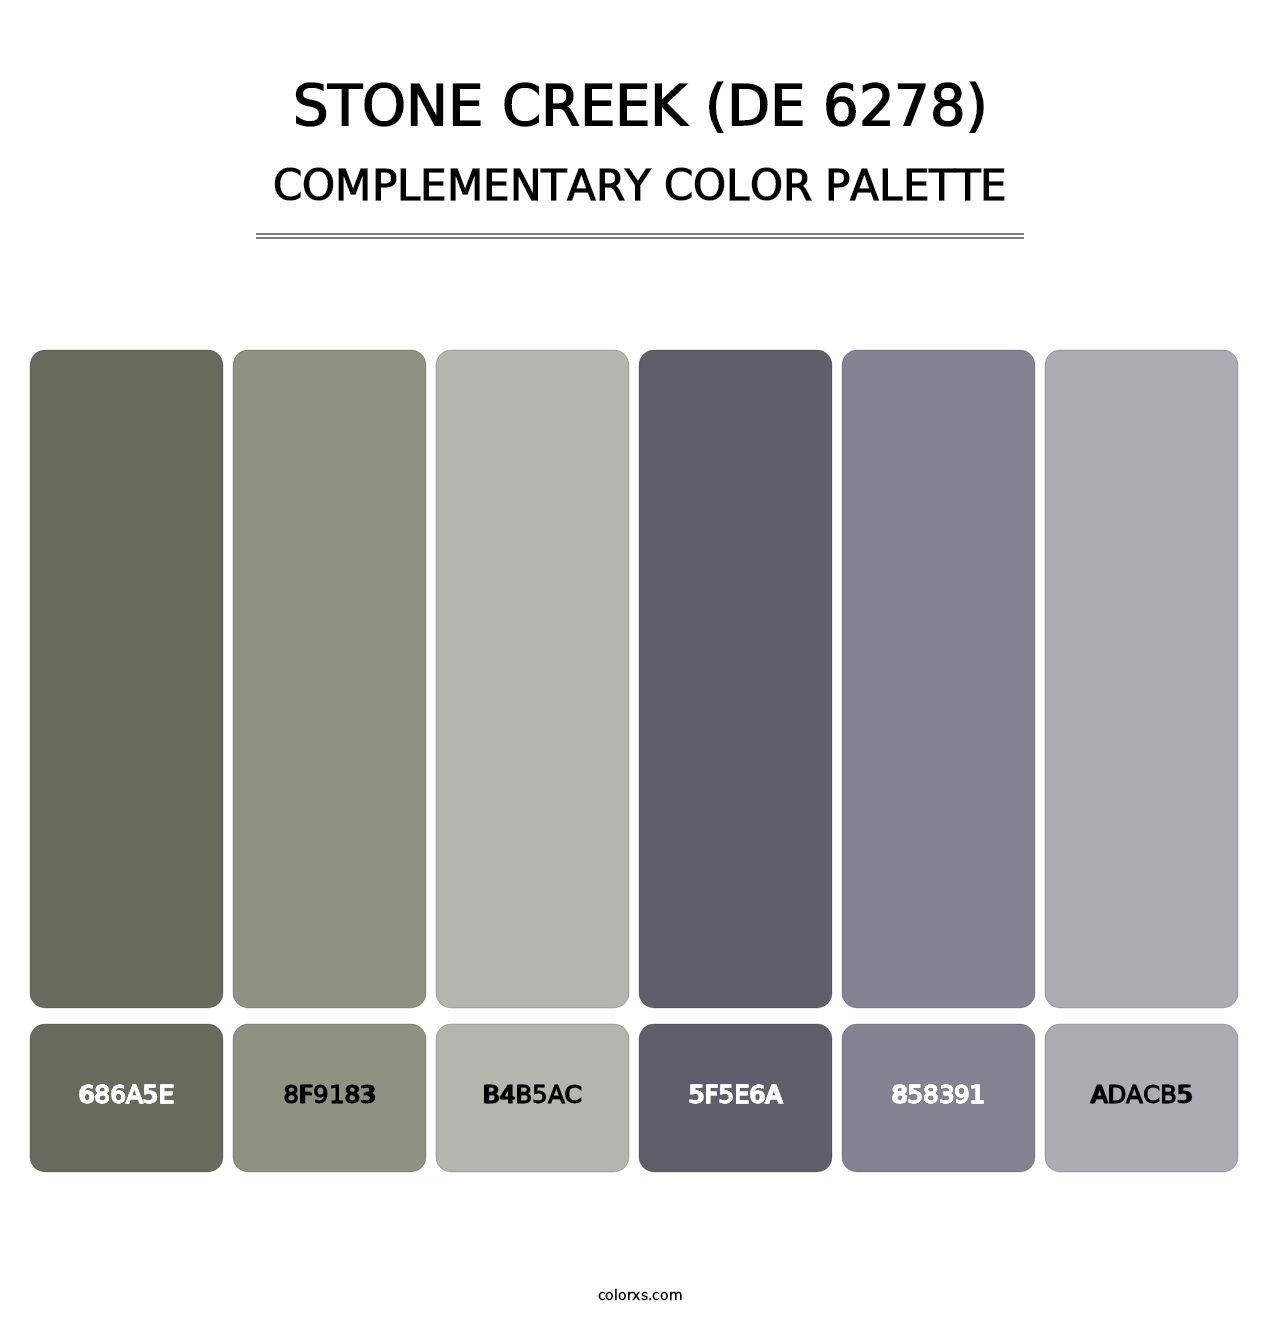 Stone Creek (DE 6278) - Complementary Color Palette